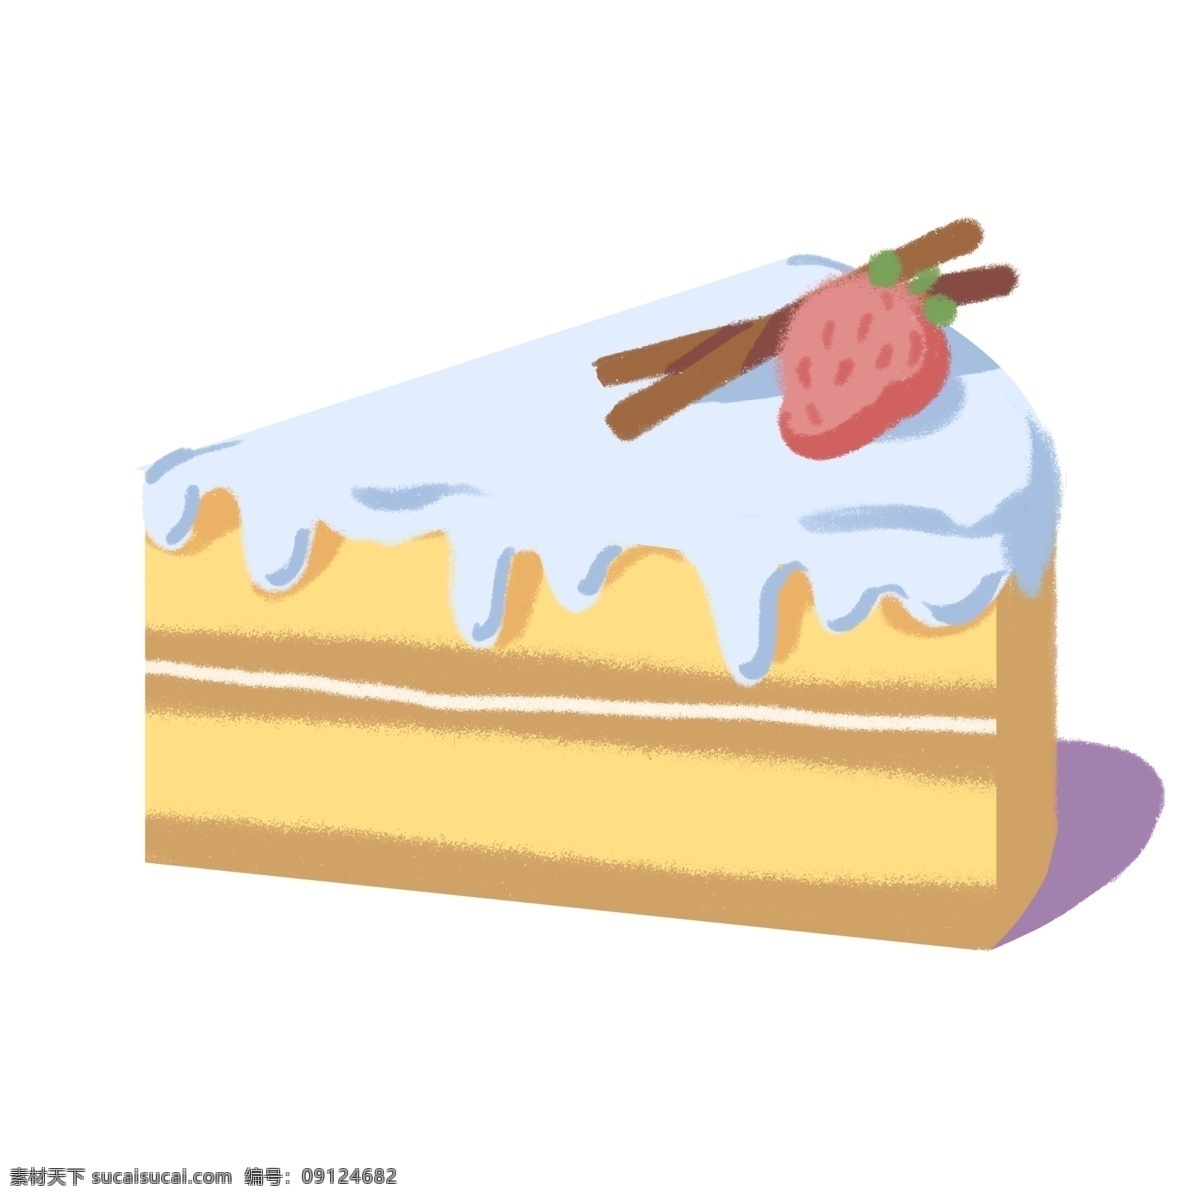 三角 草莓 蛋糕 插图 黄色面包 三角面包 草莓面包 白色奶油 黑色巧克力 可口的蛋糕 漂亮的蛋糕 蛋糕插图